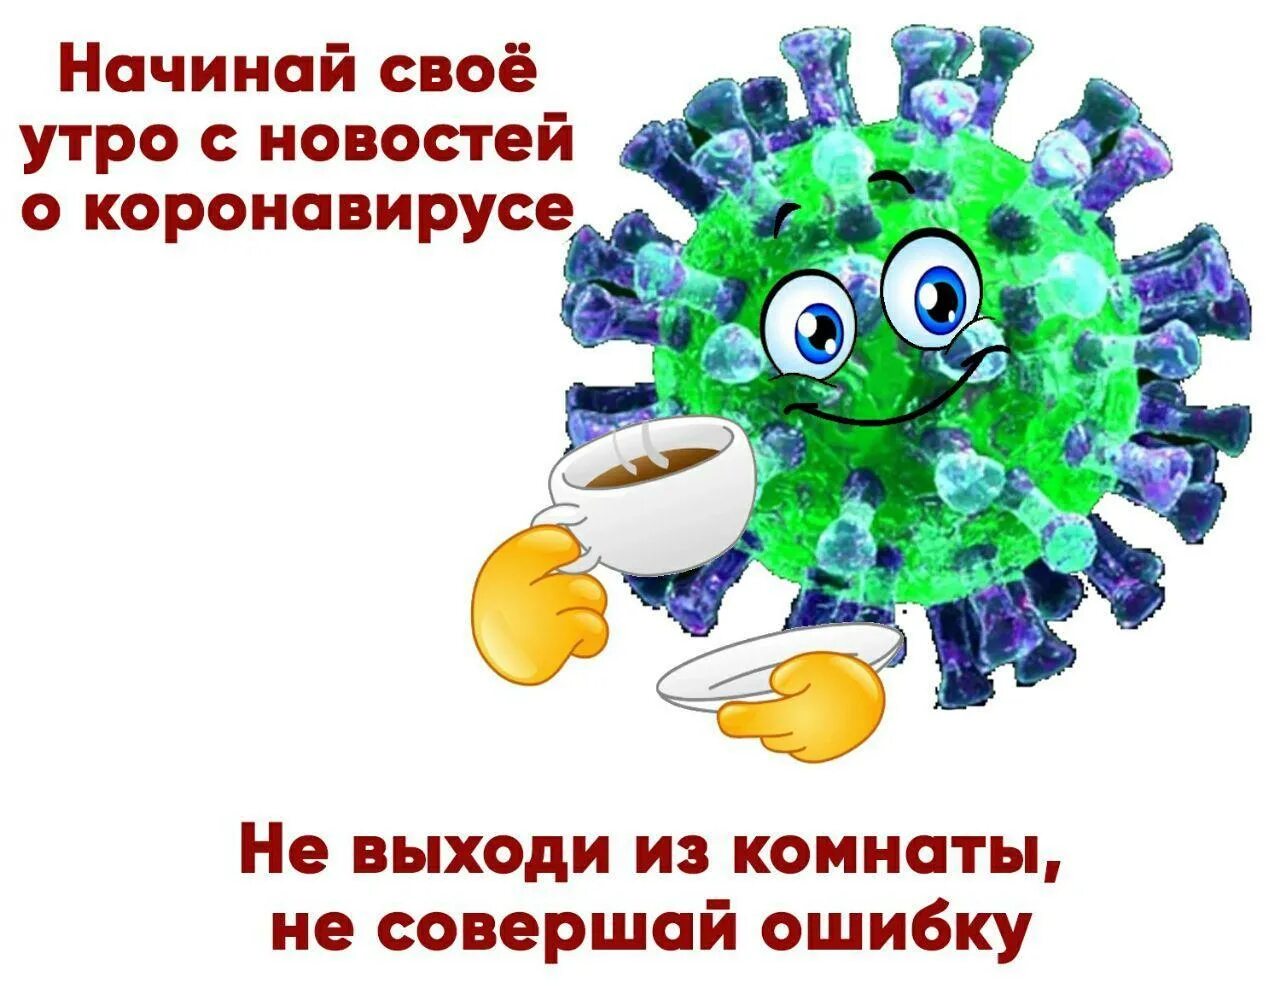 Поздравляю с коронавирусом. С днем коронавируса. Позитивные вирусы. Открытки про коронавирус прикольные.